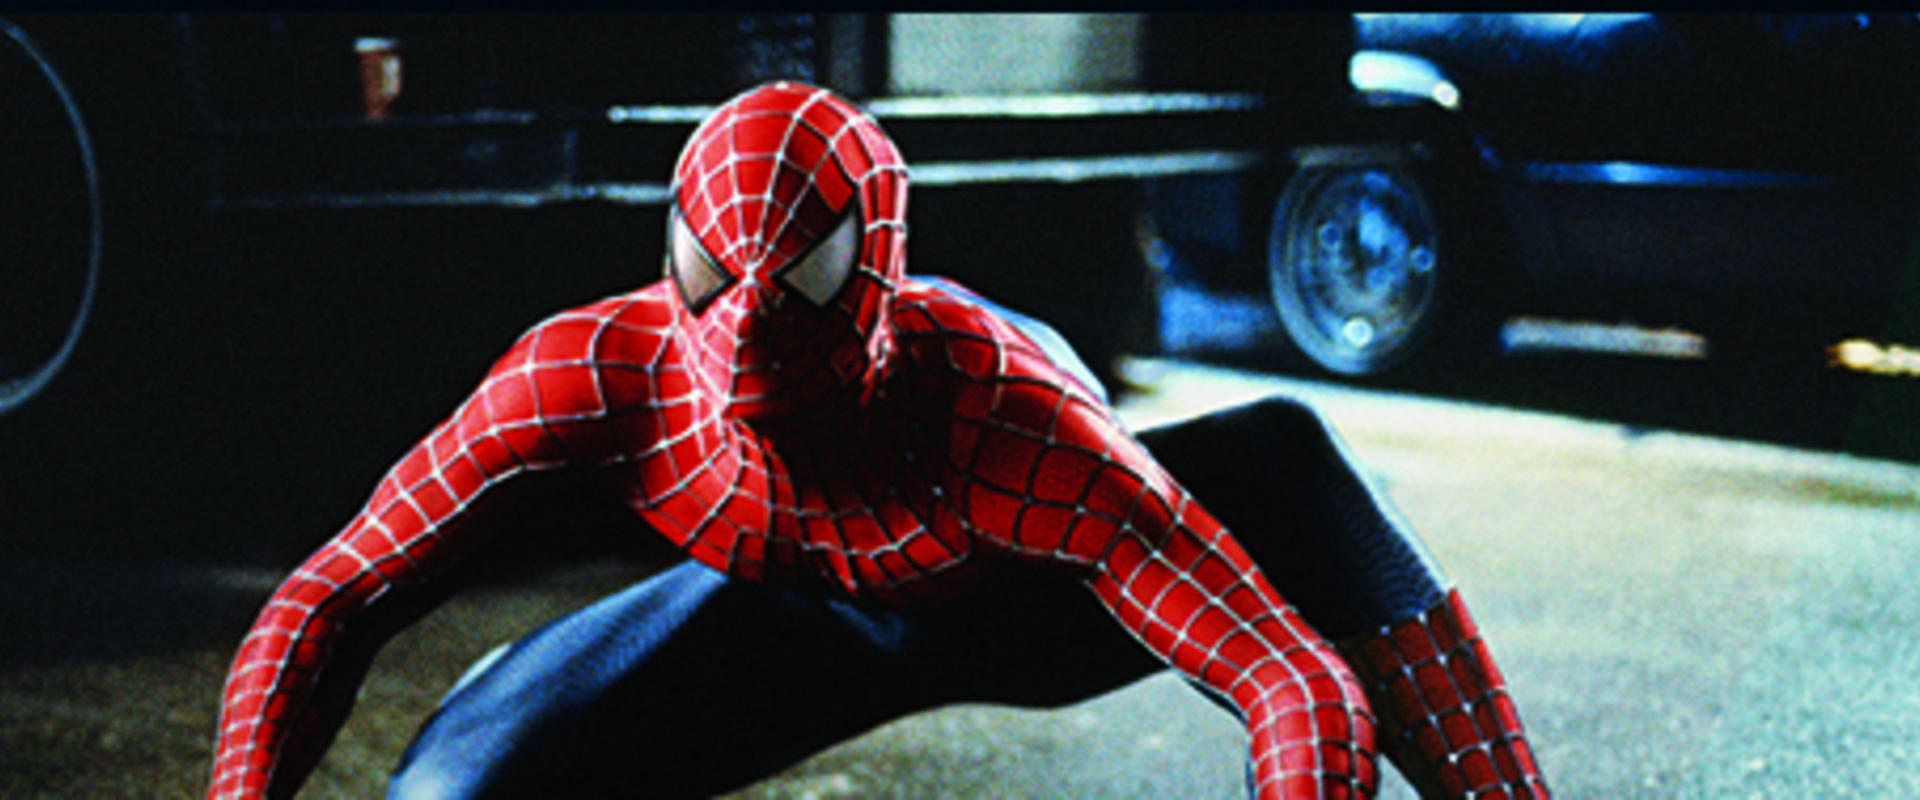 Spider-Man background 2